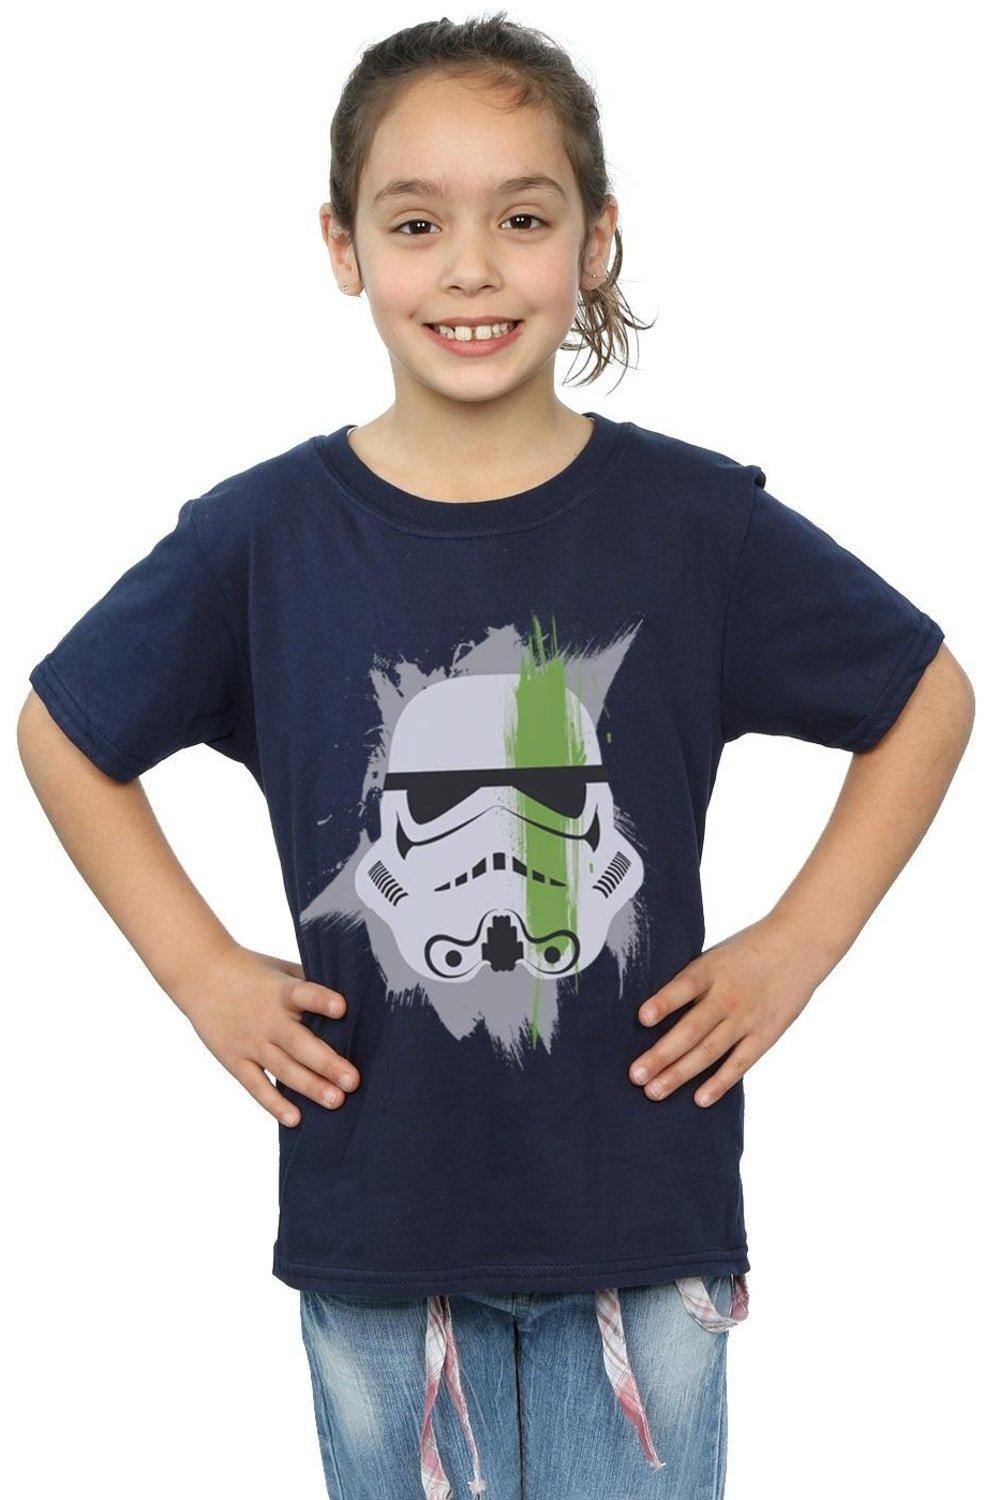 Stormtrooper Paint Stroke Cotton T-Shirt